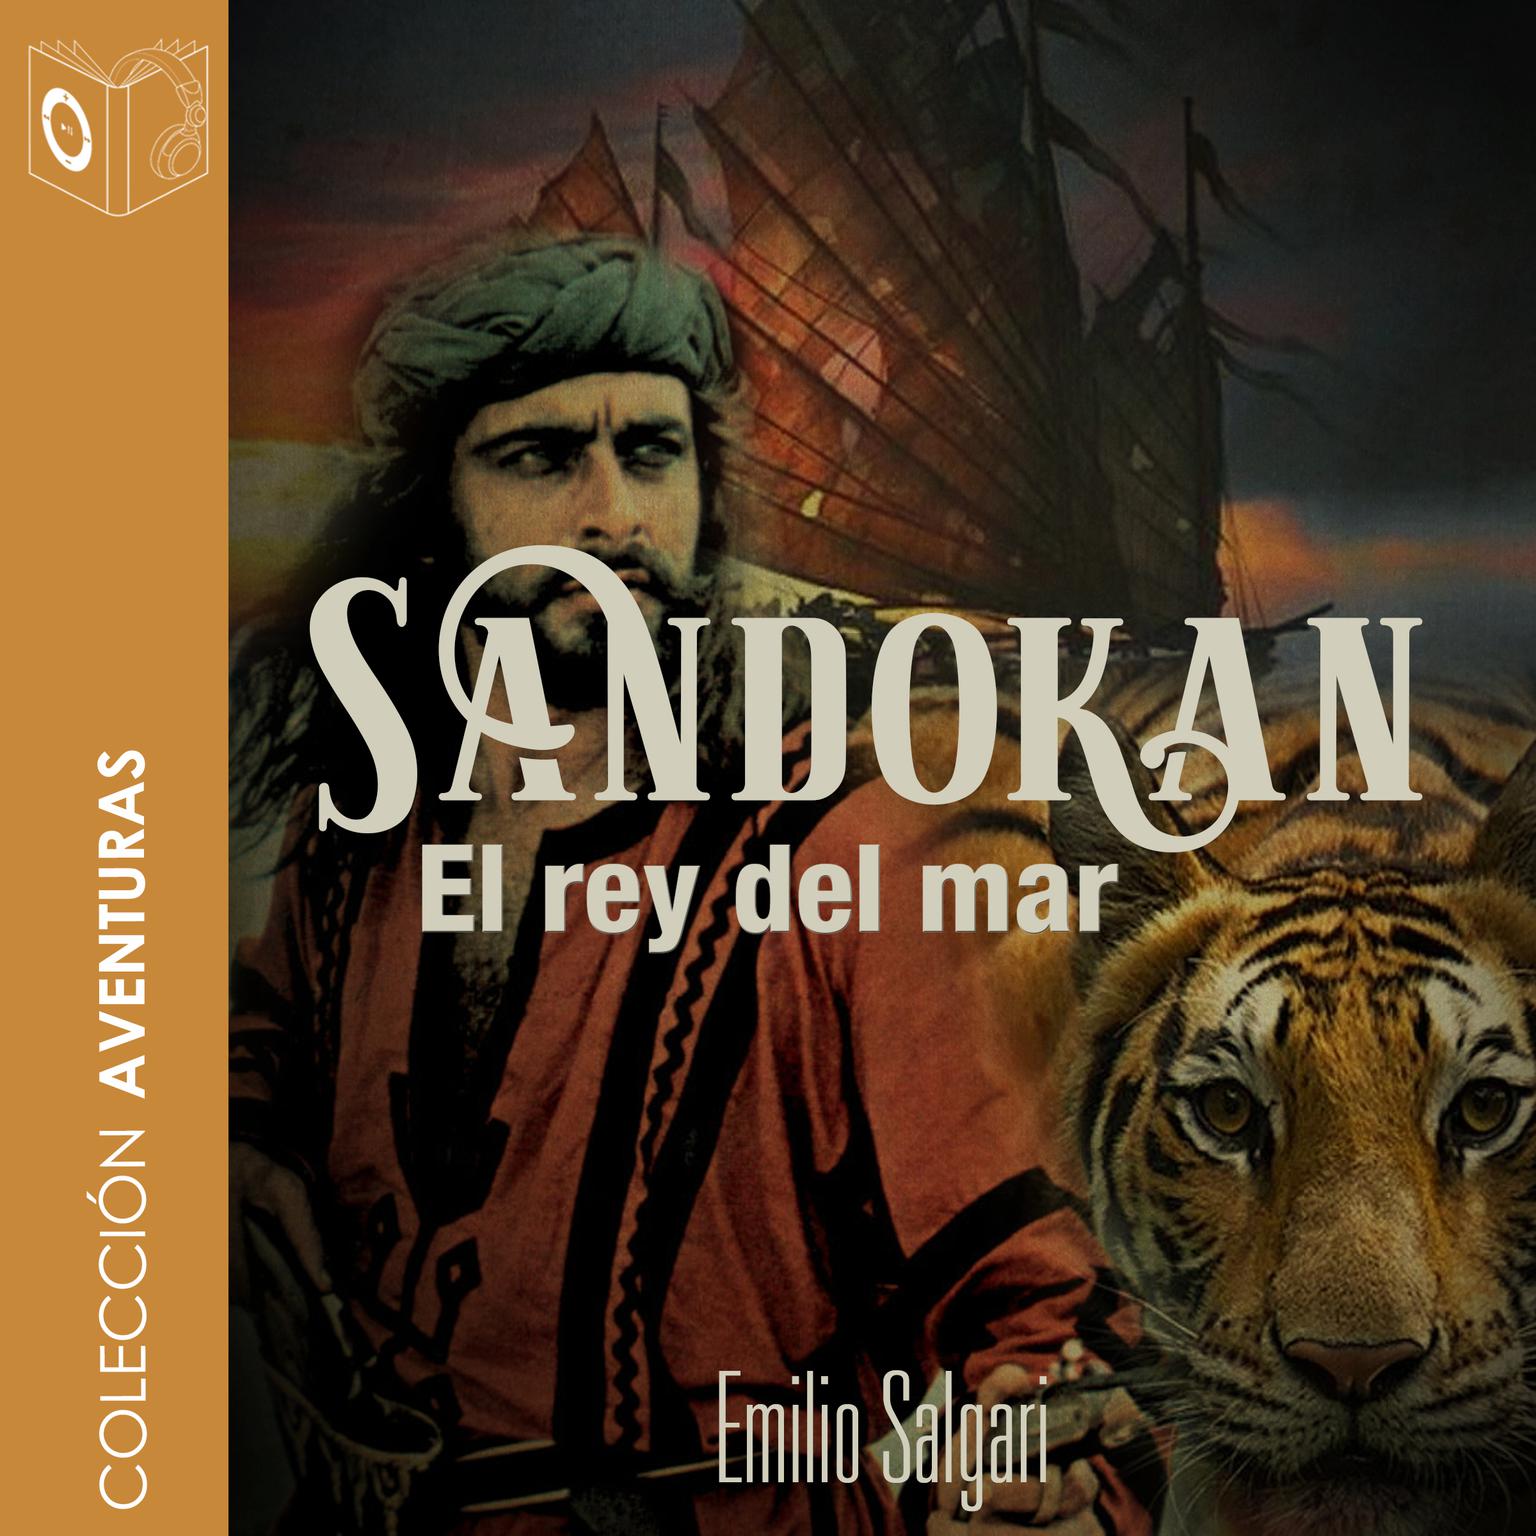 Sandokan el rey del mar Audiobook, by Emilio Salgari